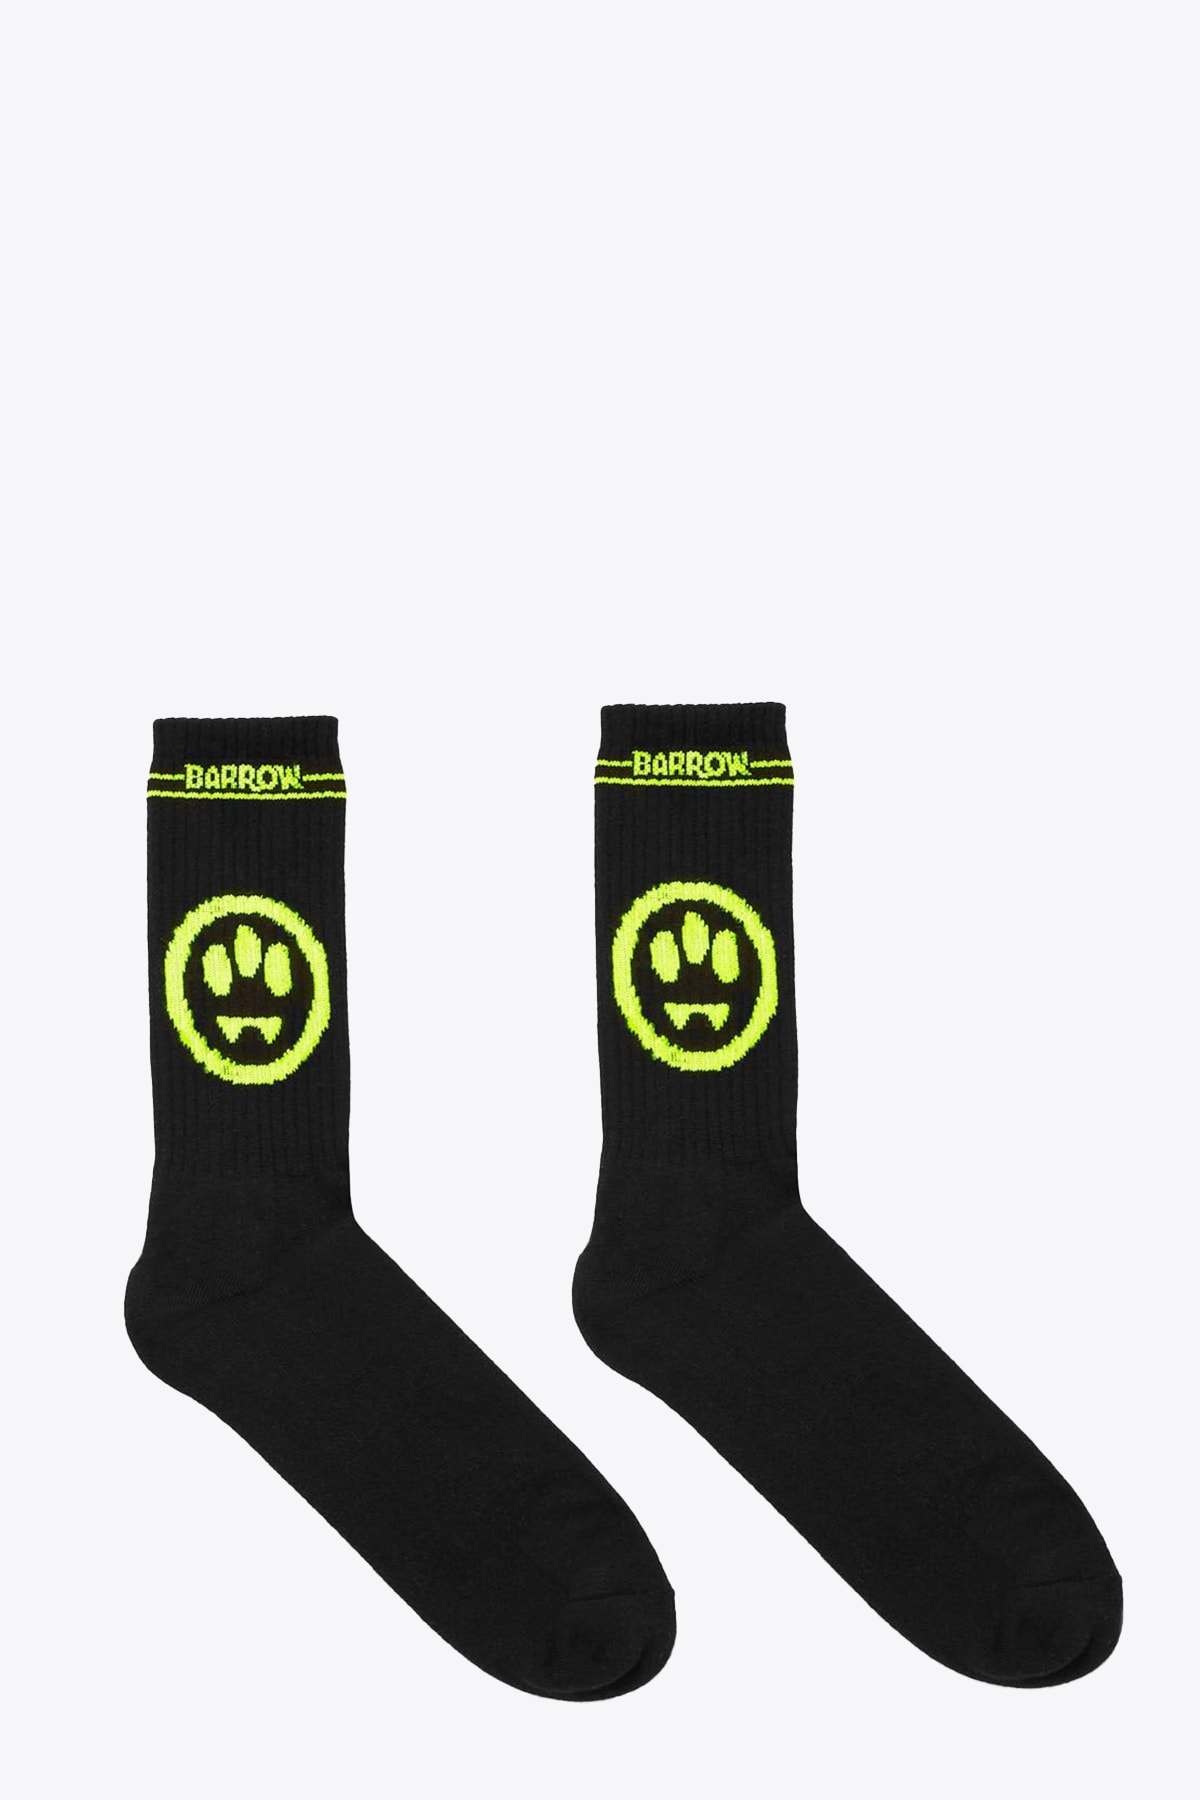 Barrow Socks Black ribbed cotton socks with smile and logo print